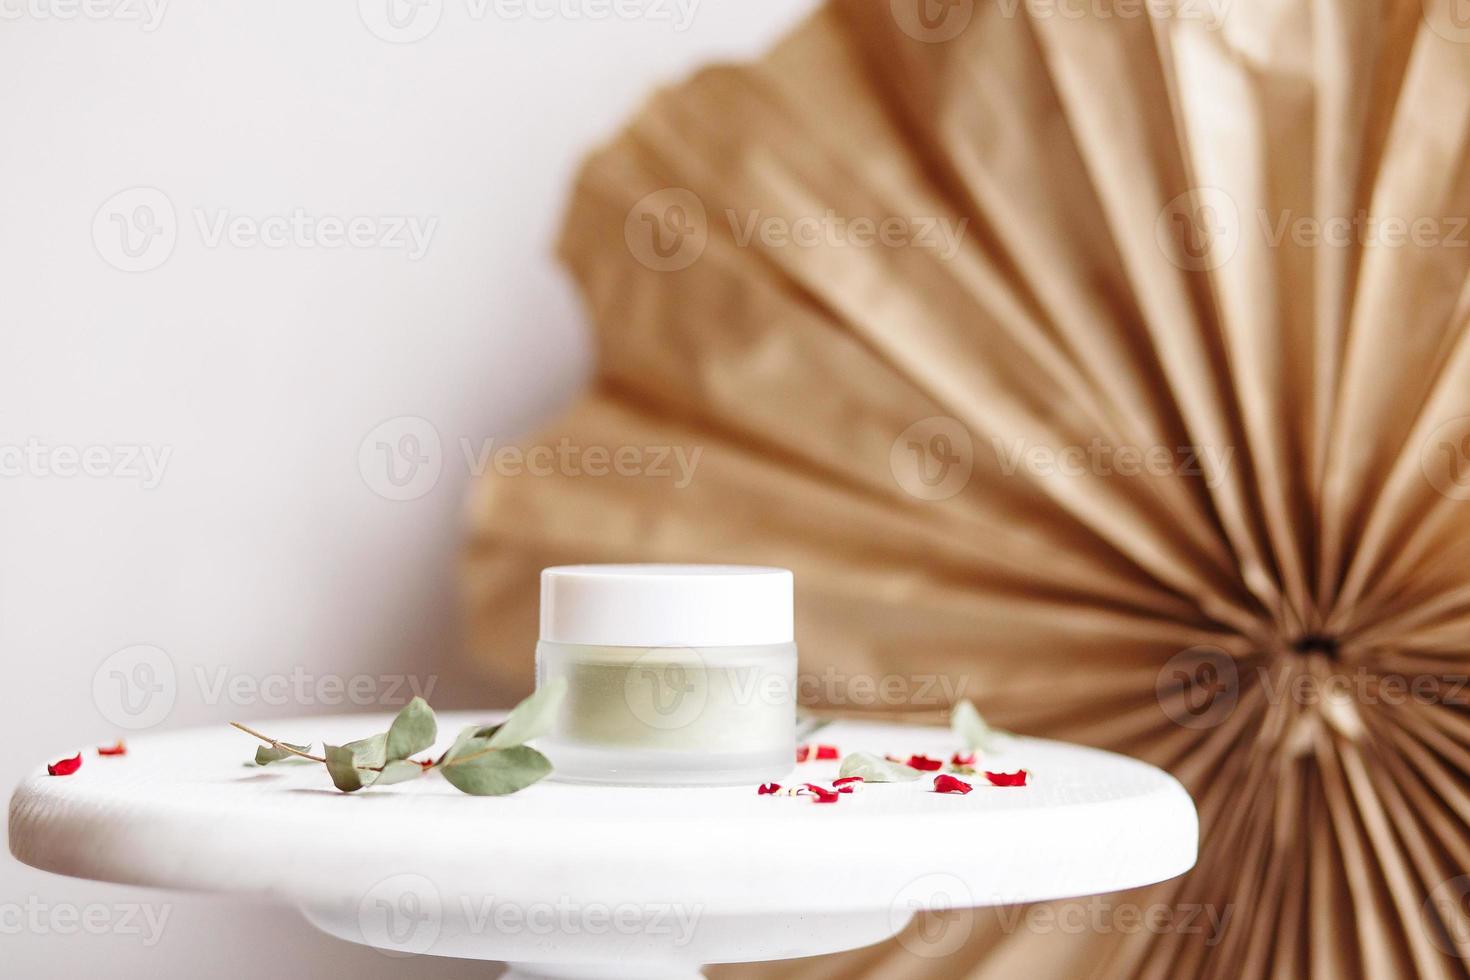 maschera cosmetica in polvere. vasetto di vetro con matcha su fondo bianco con petali secchi. foto